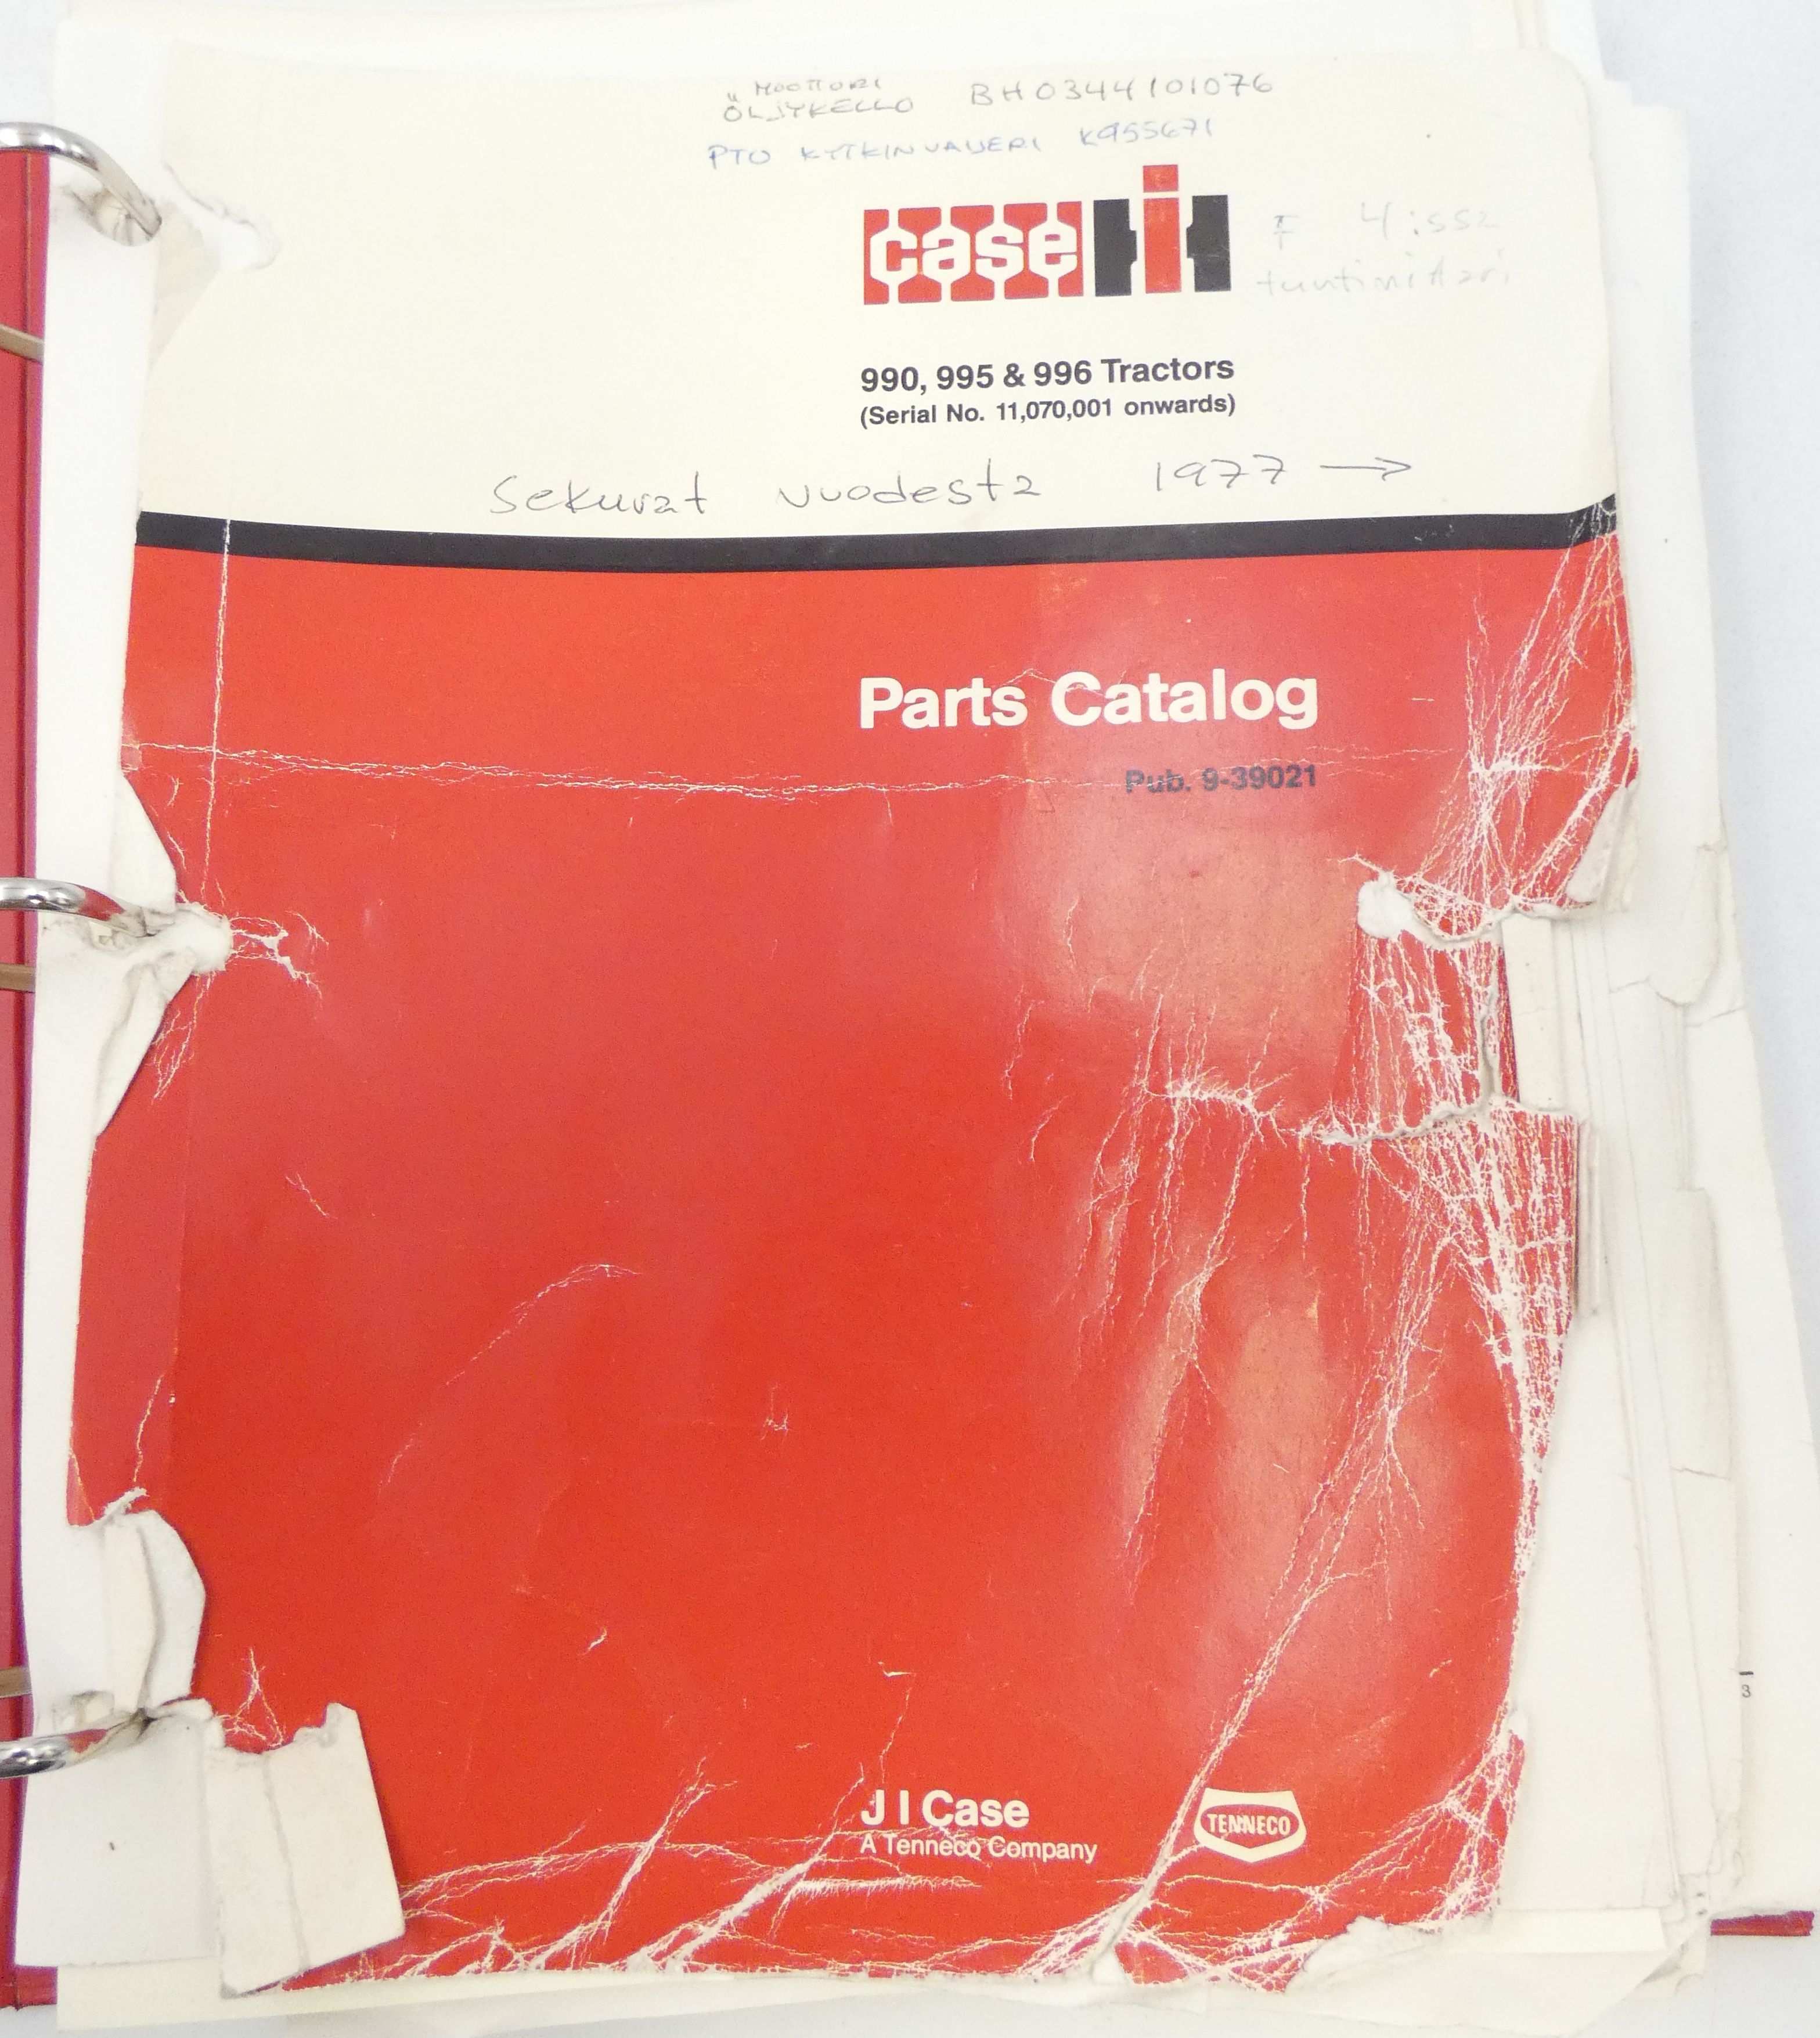 CaseIH 990, 995 & 996 tractors parts catalog